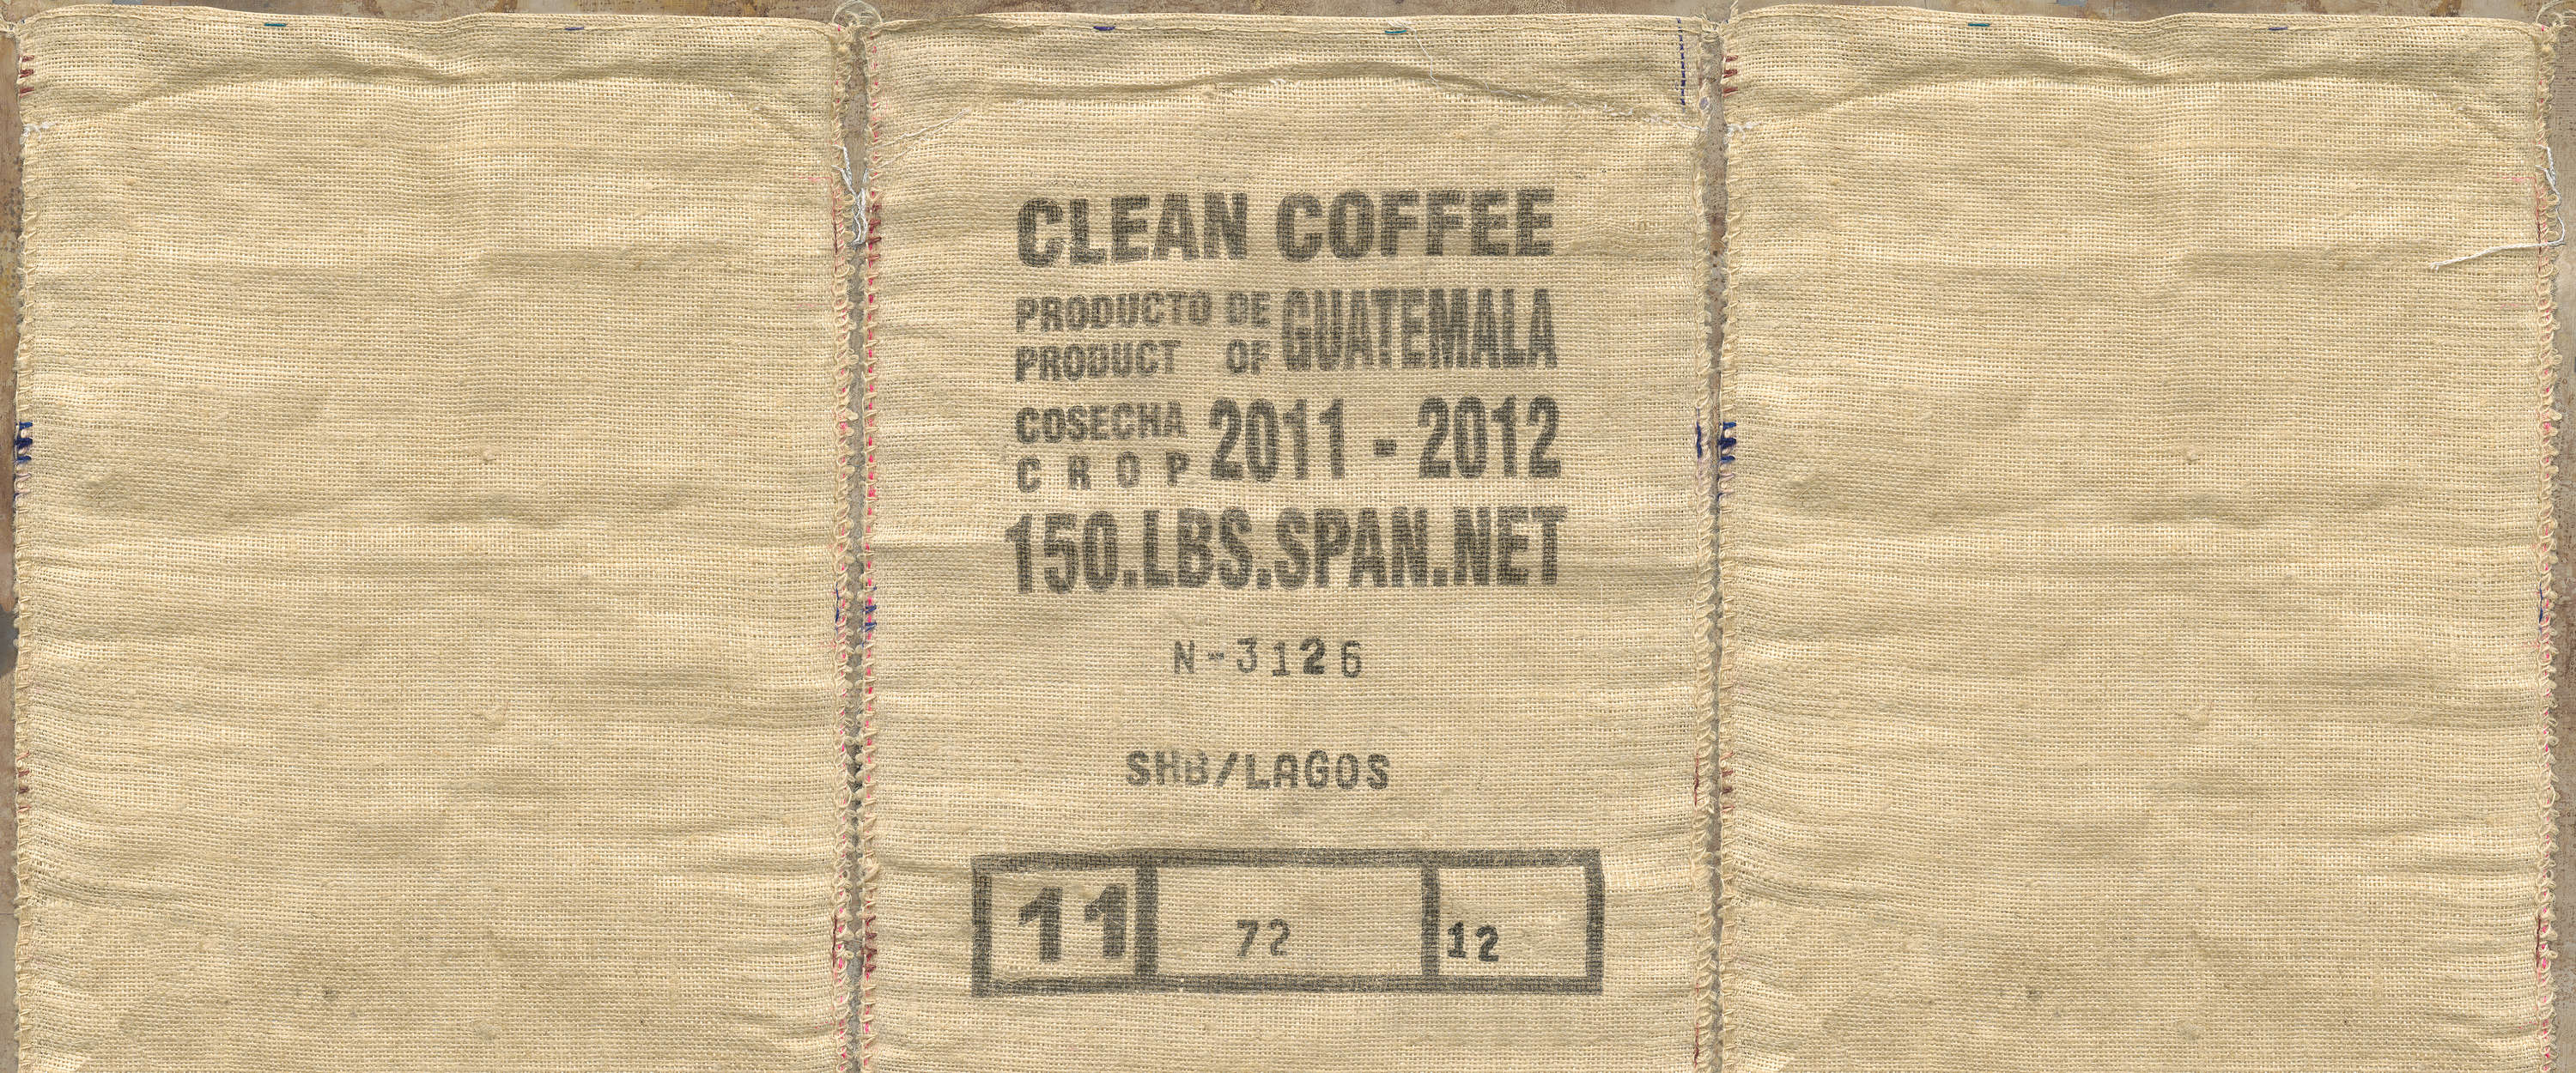             Fotomurali con vista dettagliata di una busta di caffè
        